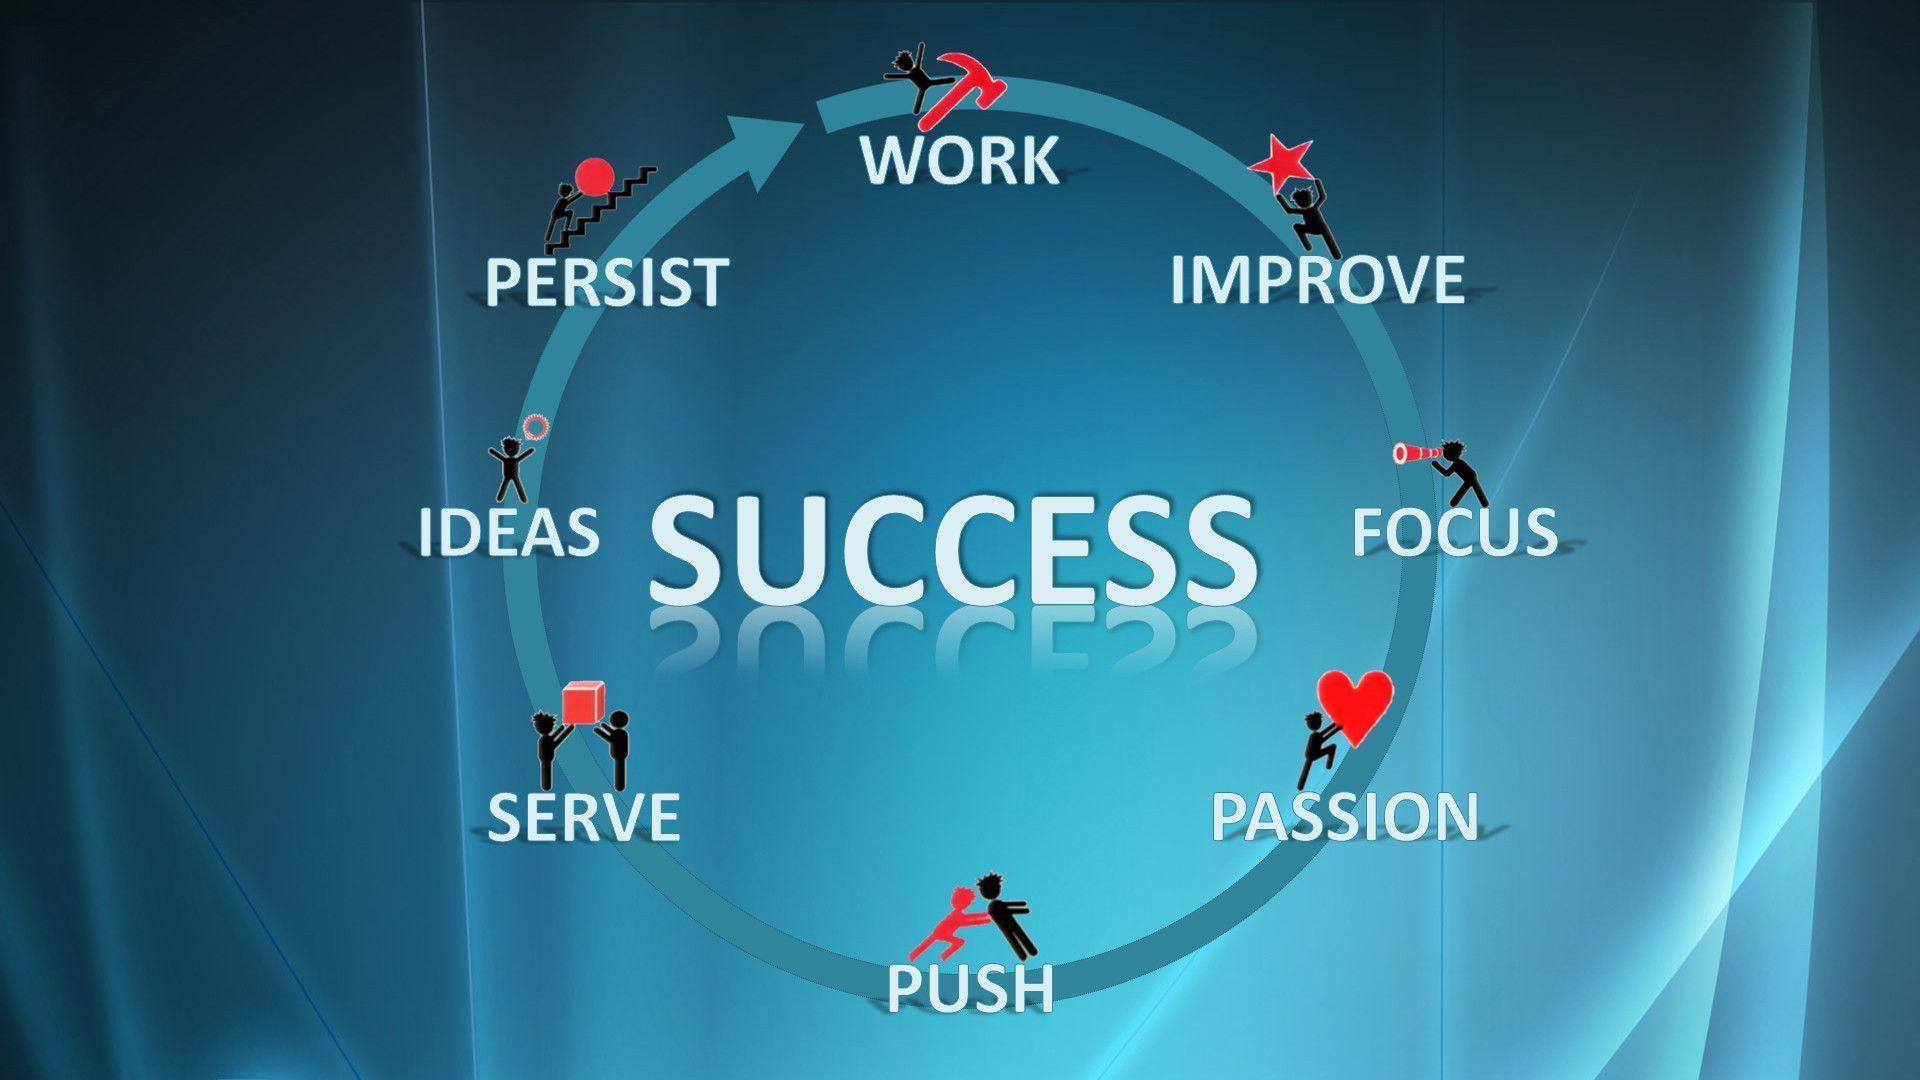 HD Wallpaper for Secrets of success in 8 words « Behçet Mutlu